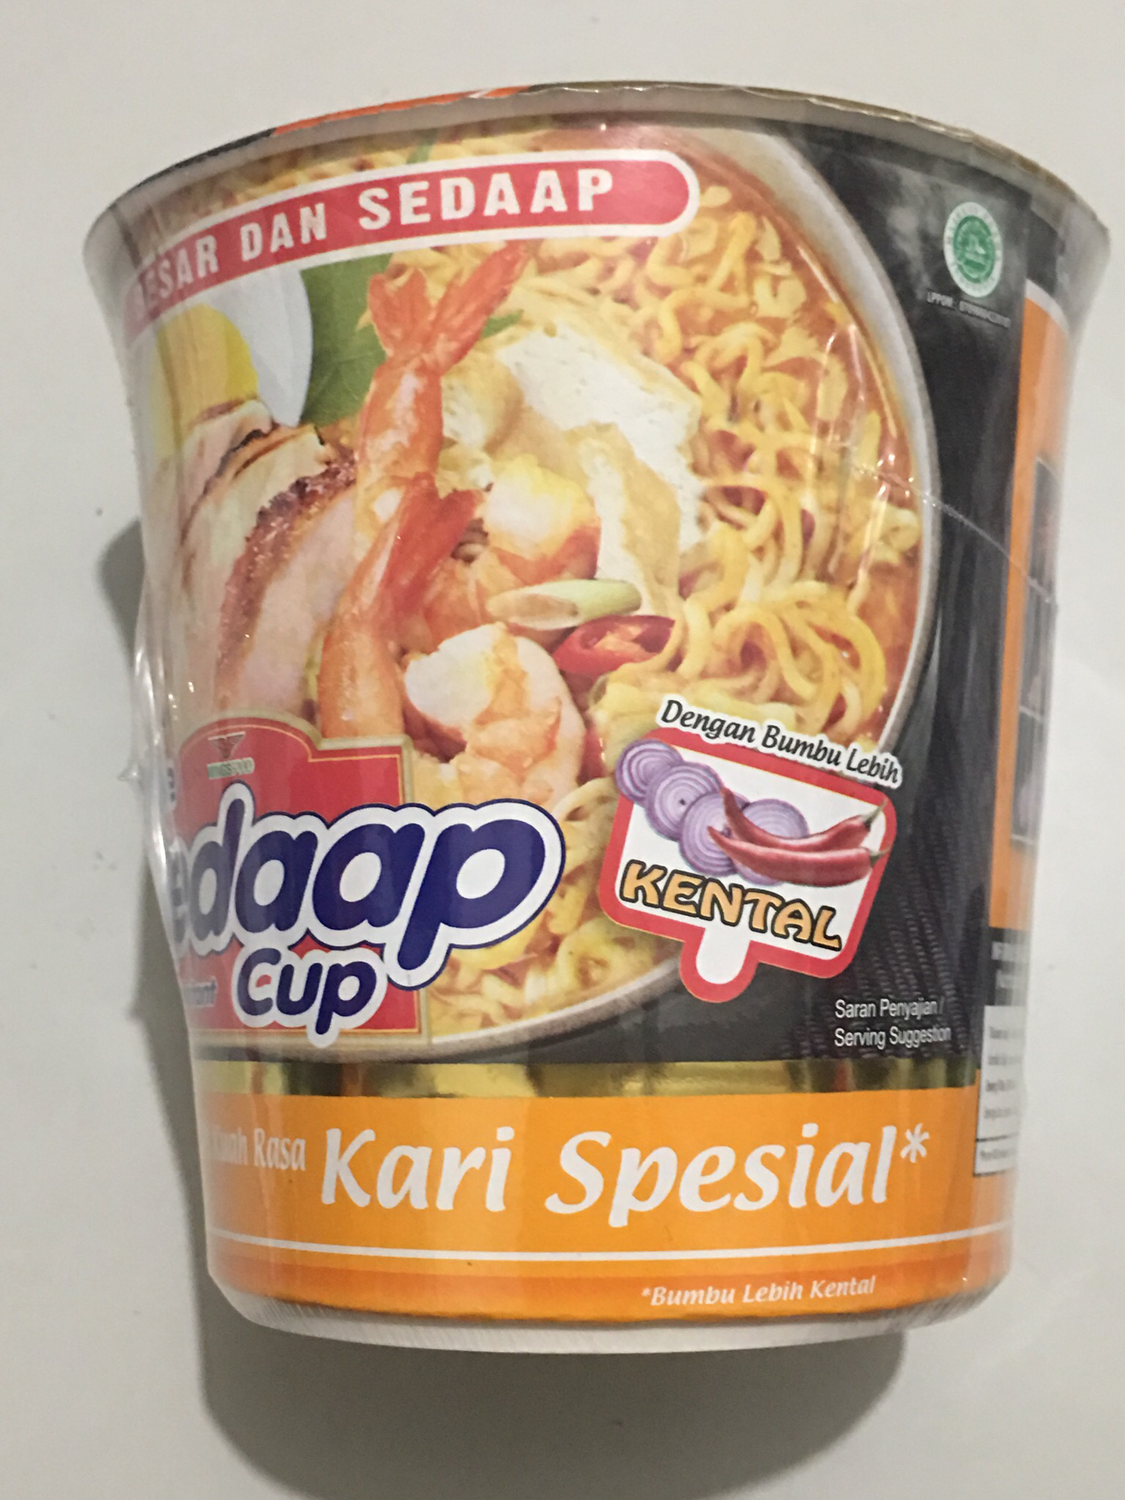 MiSedaap Cup Kari Special 